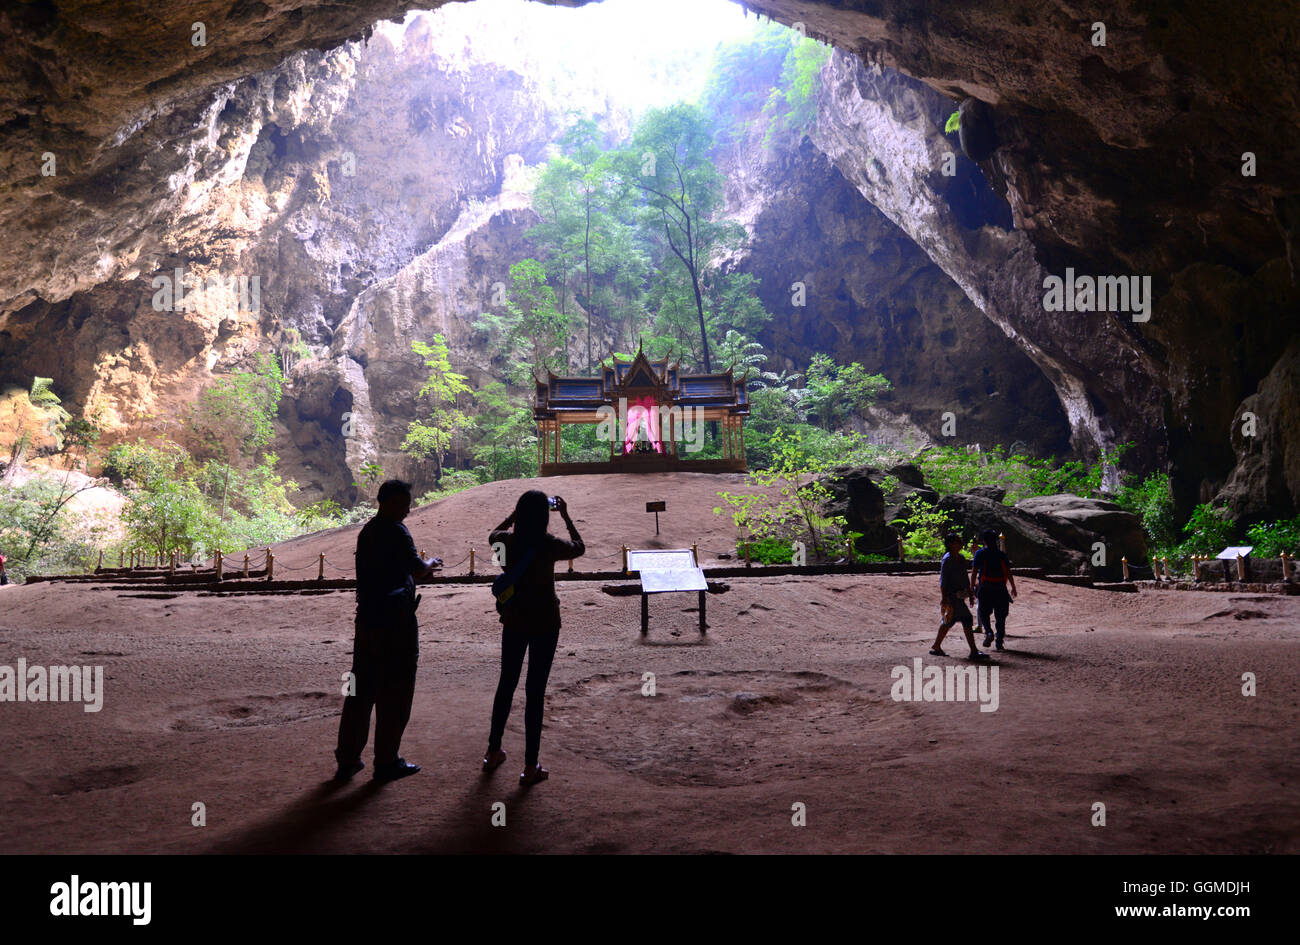 Phraya Nakhon Cave in Khao Sam Roi Yot National Park near Hua Hin, center-Thailand, Thailand Stock Photo